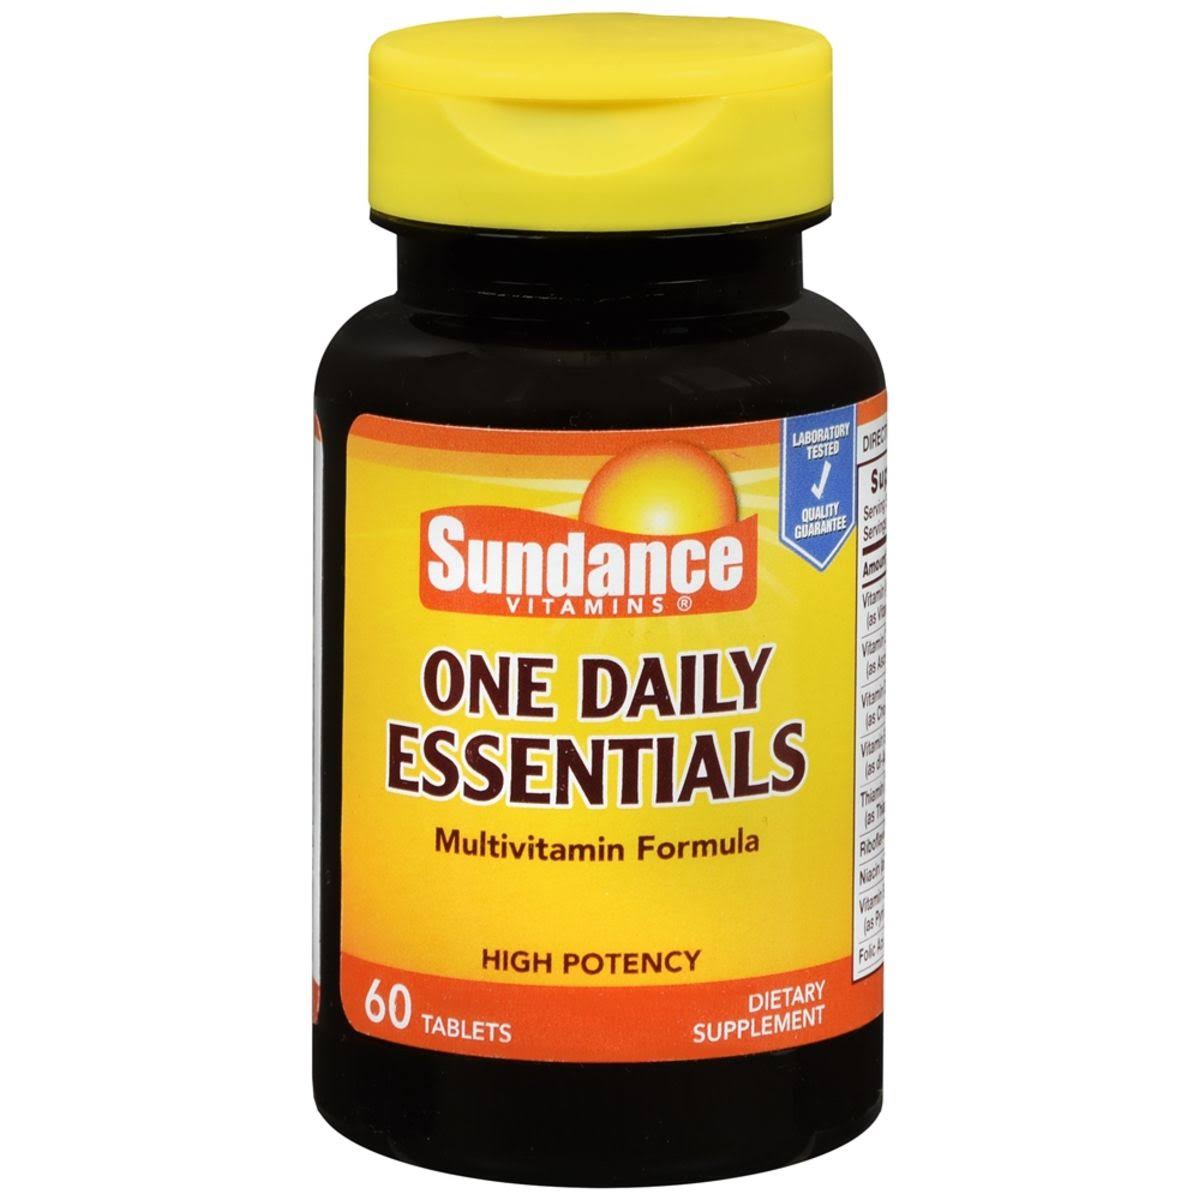 Sundance One Daily Essentials Multivitamin Formula Dietary Supplement,